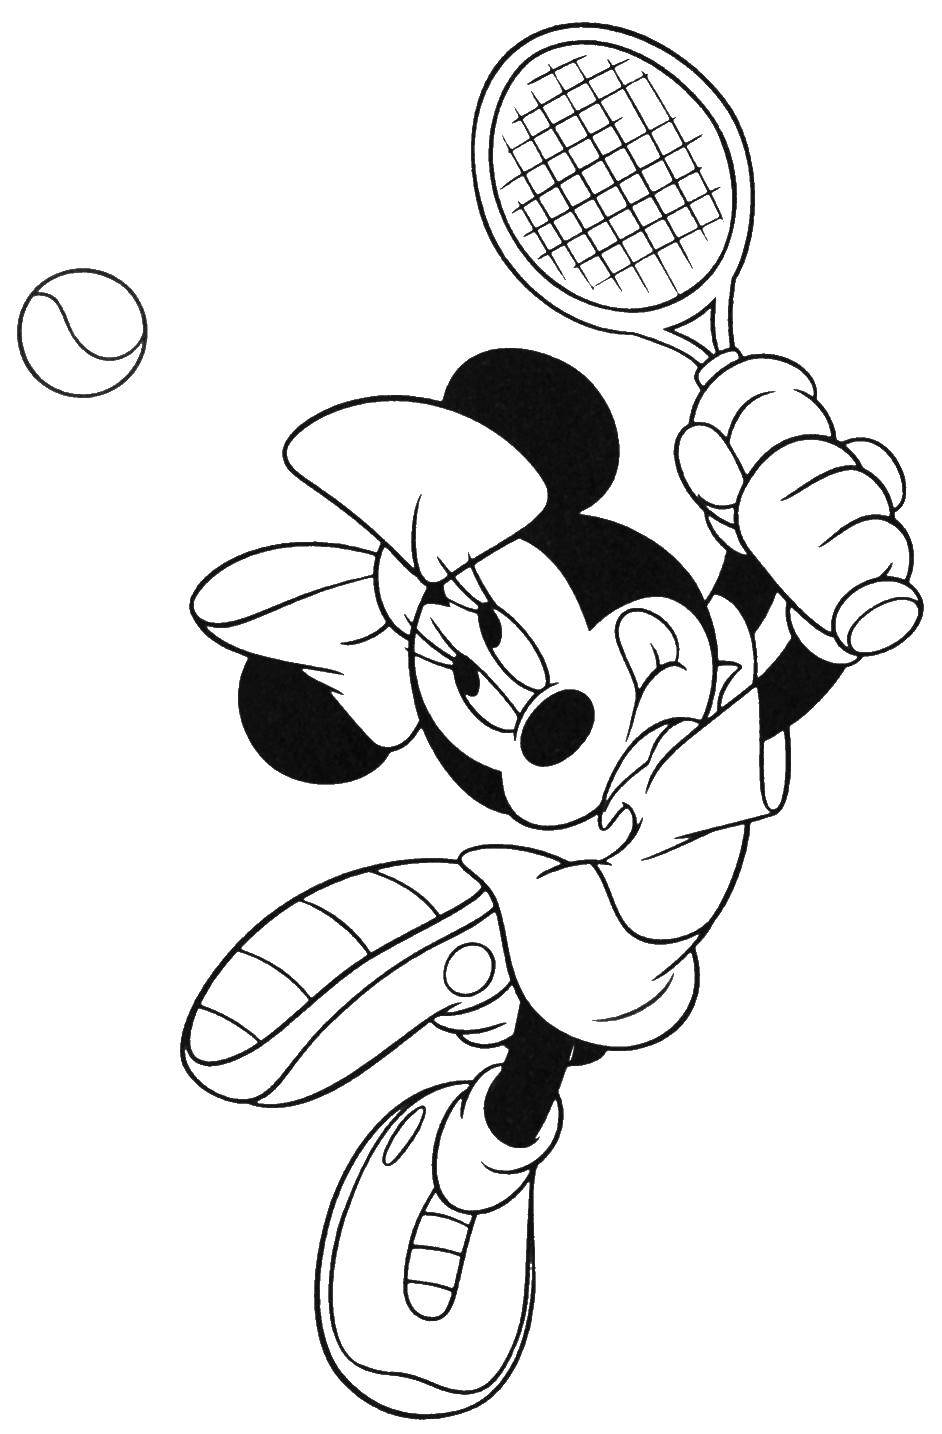  Минни маус играет в теннис